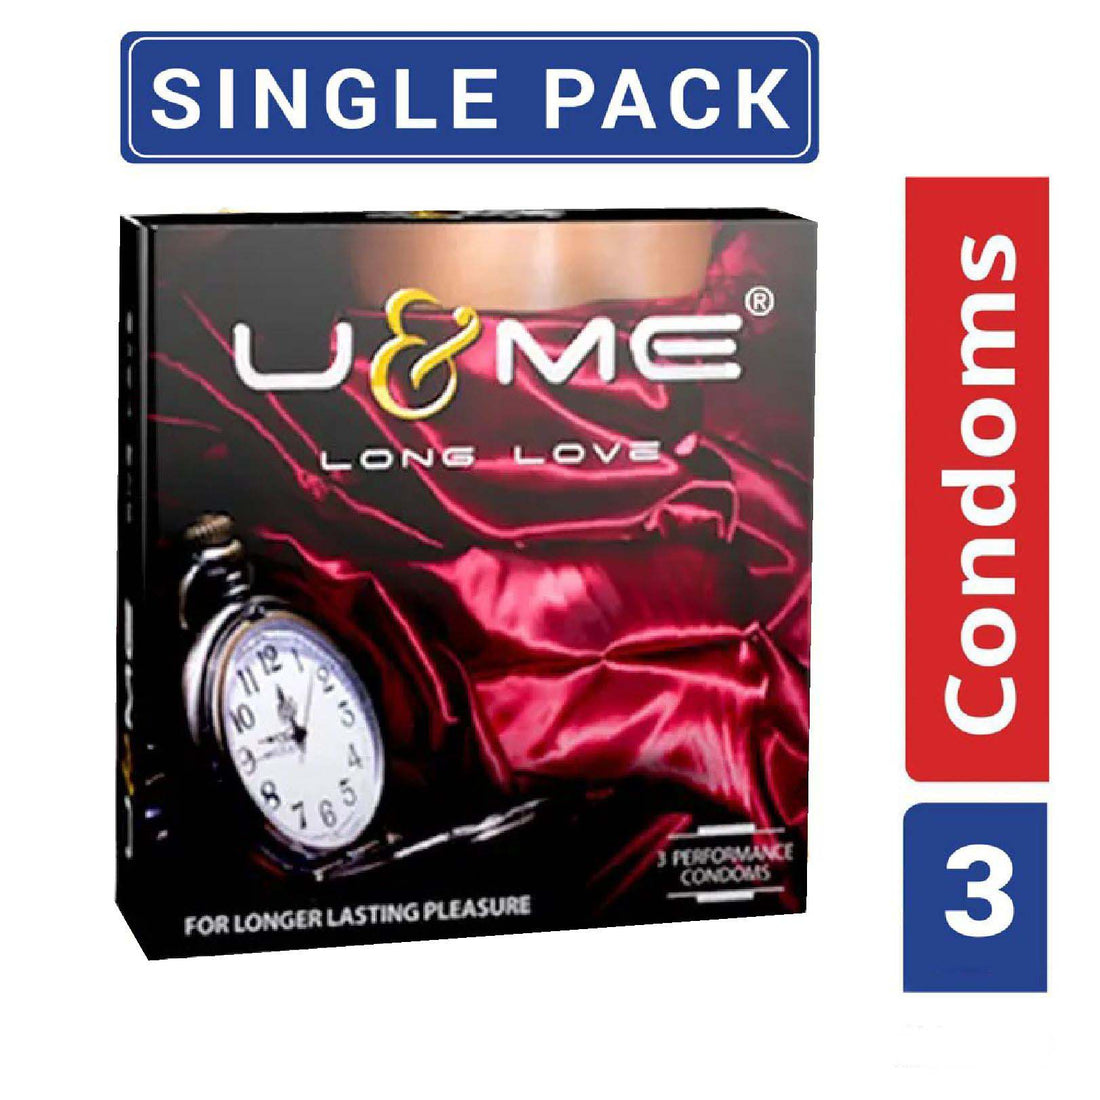 U&amp;Me Long Love Condom 3 piece